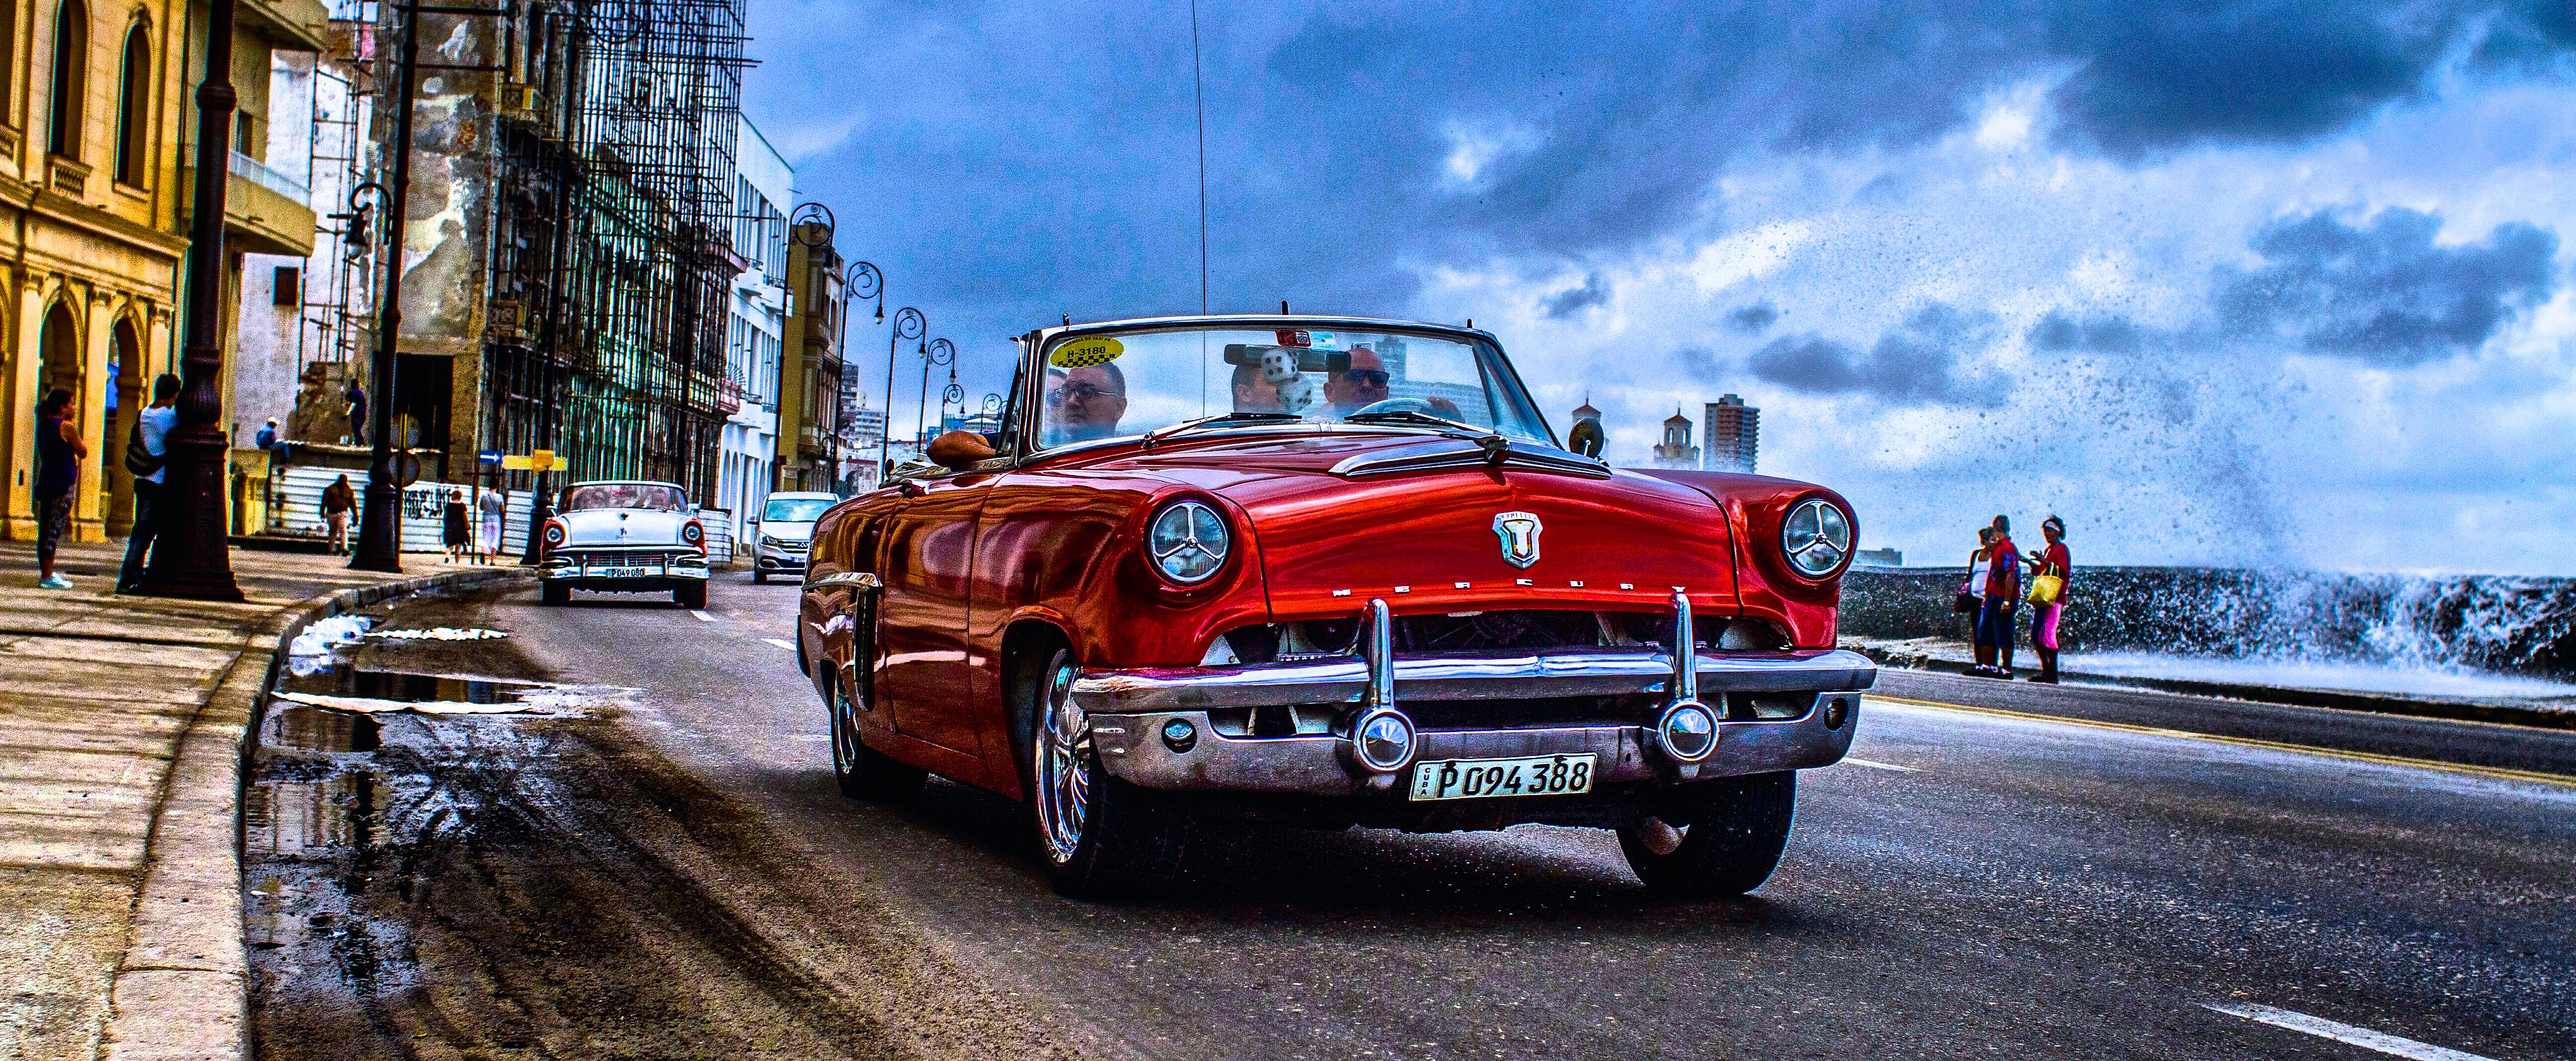 vintage car tour cuba